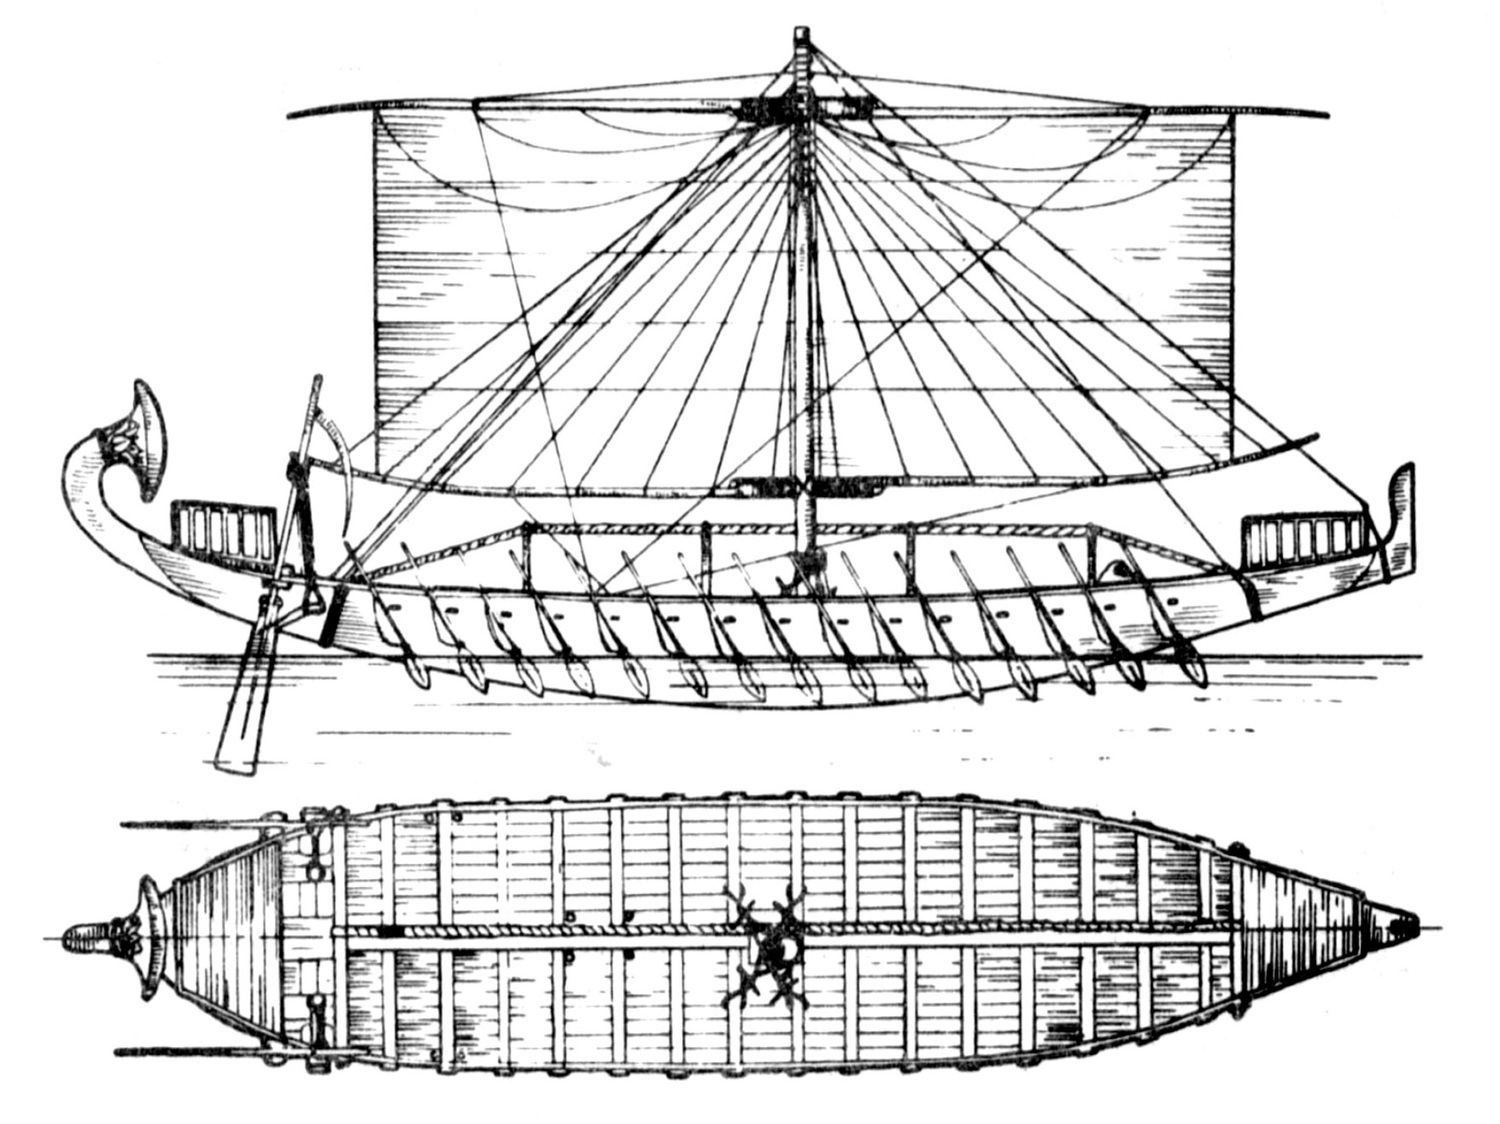 Египетское судно времен Нового царства, XVIII династия